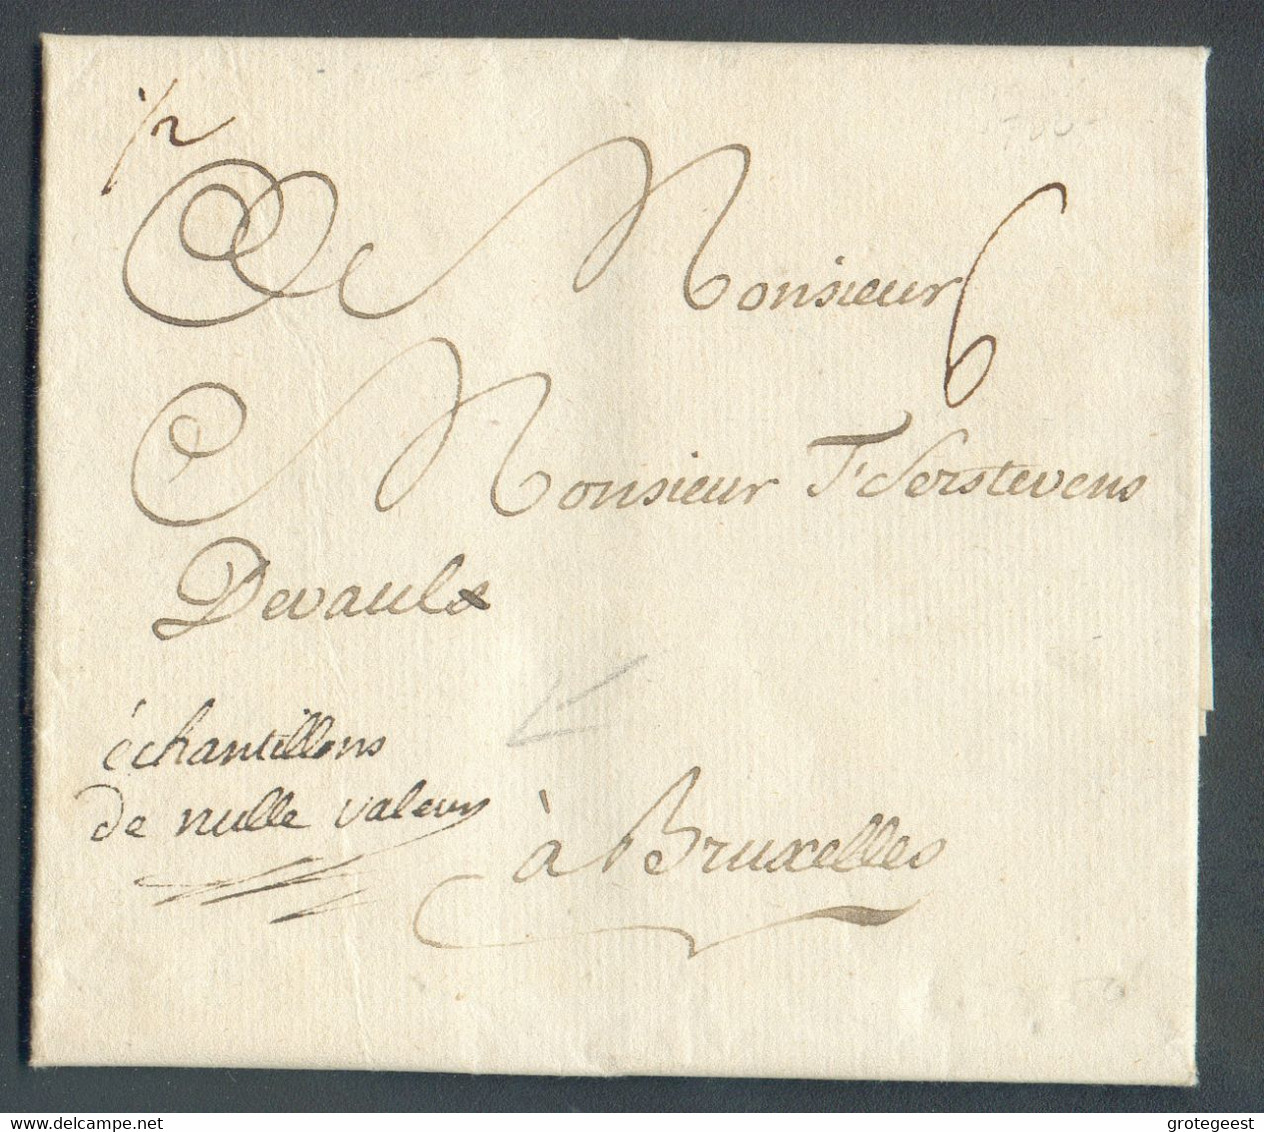 LAC De DOLHAIN Le 11 Mars 1780 + Manuscrit '½' Et 'échantillons De Nulle Valeur' Vers Bruxelles Port '6'. - 16441 - 1714-1794 (Pays-Bas Autrichiens)